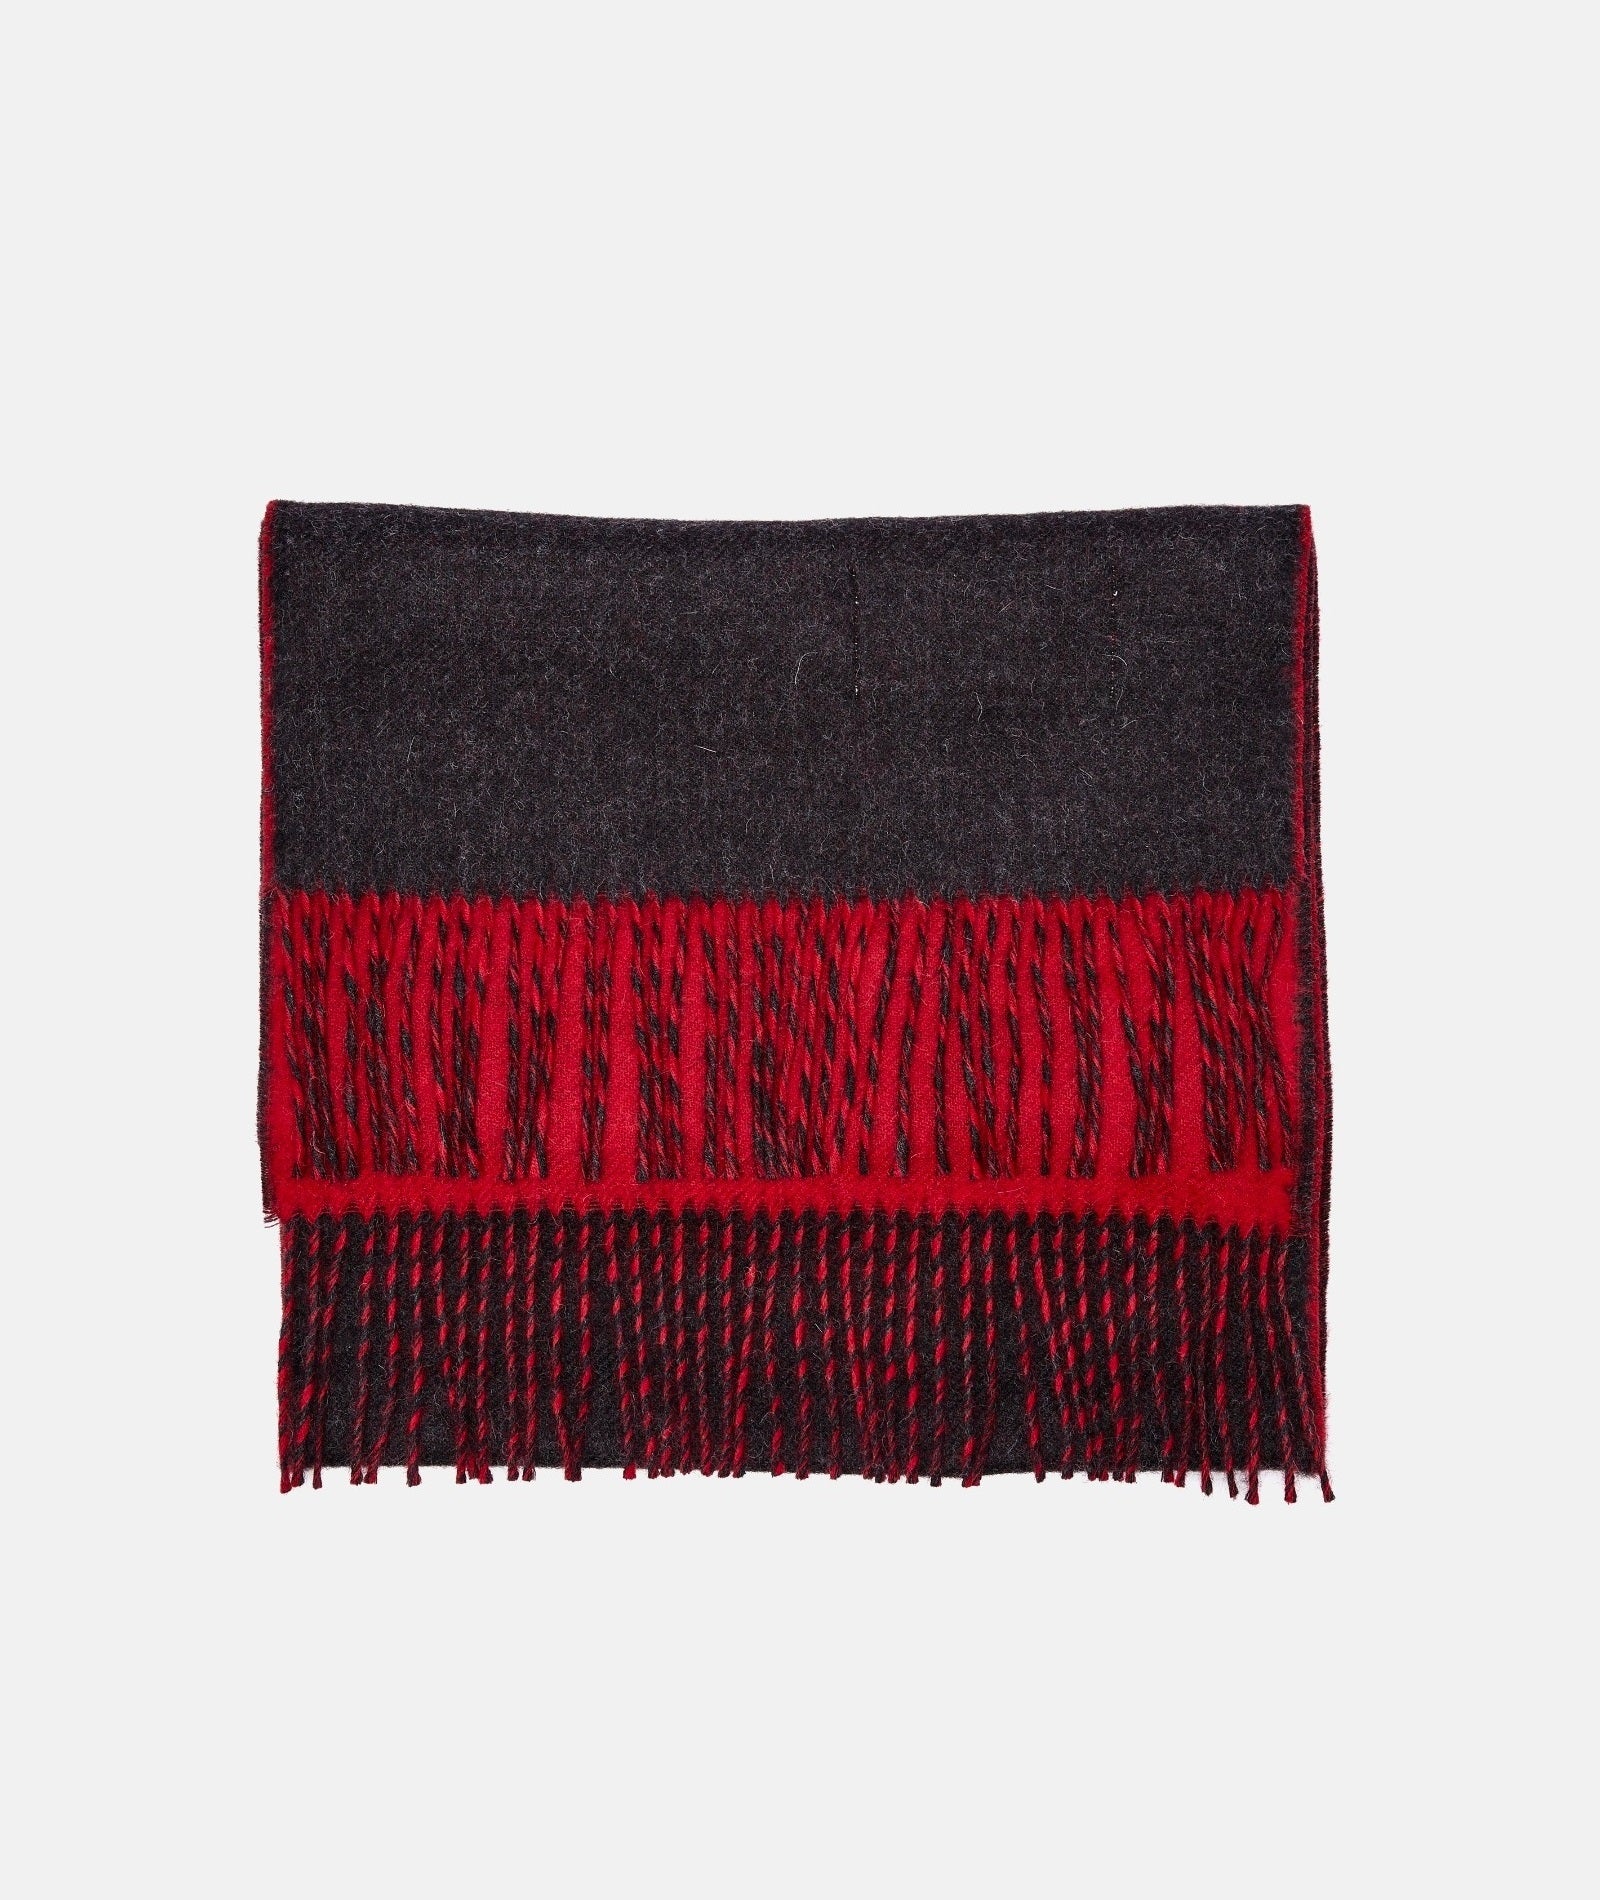 アルパカ ウールの 2 つの顔を持つスカーフ、レッド/ブラック